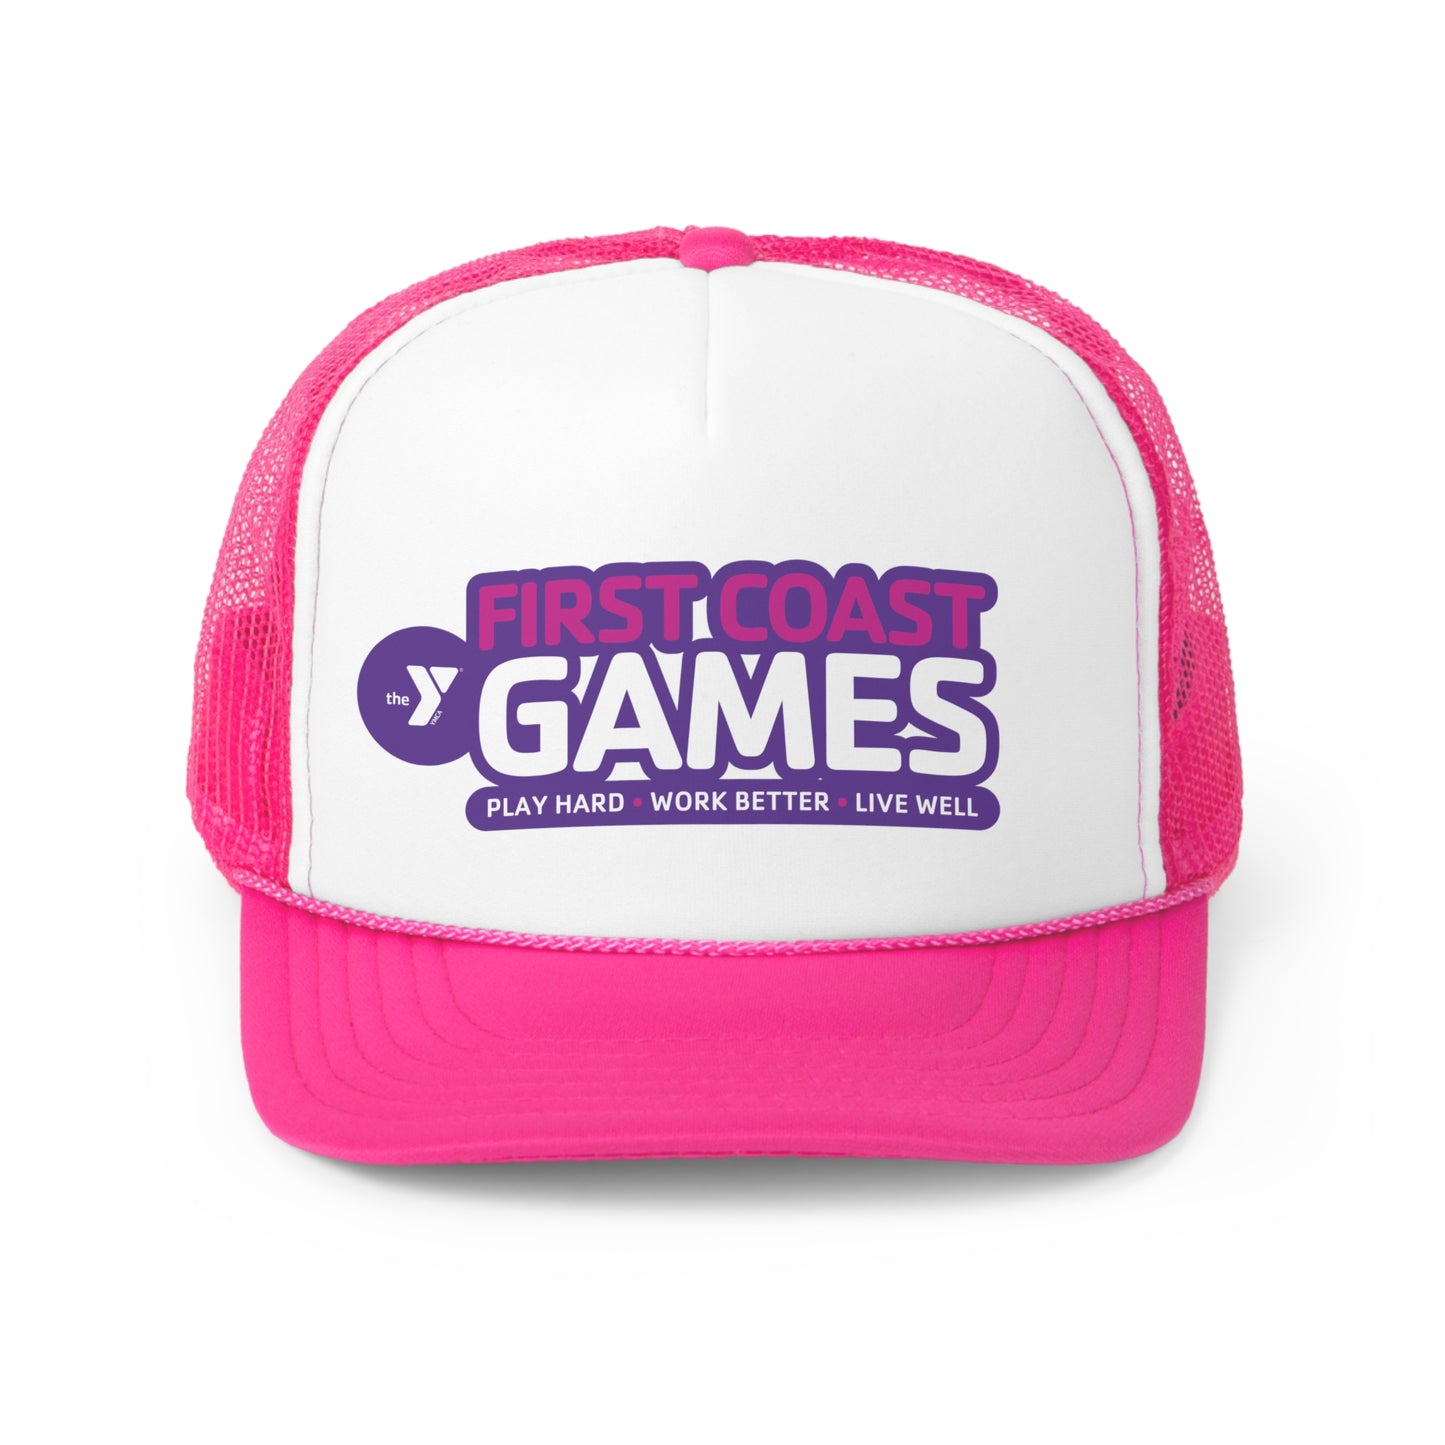 First Coast Games - Trucker Cap